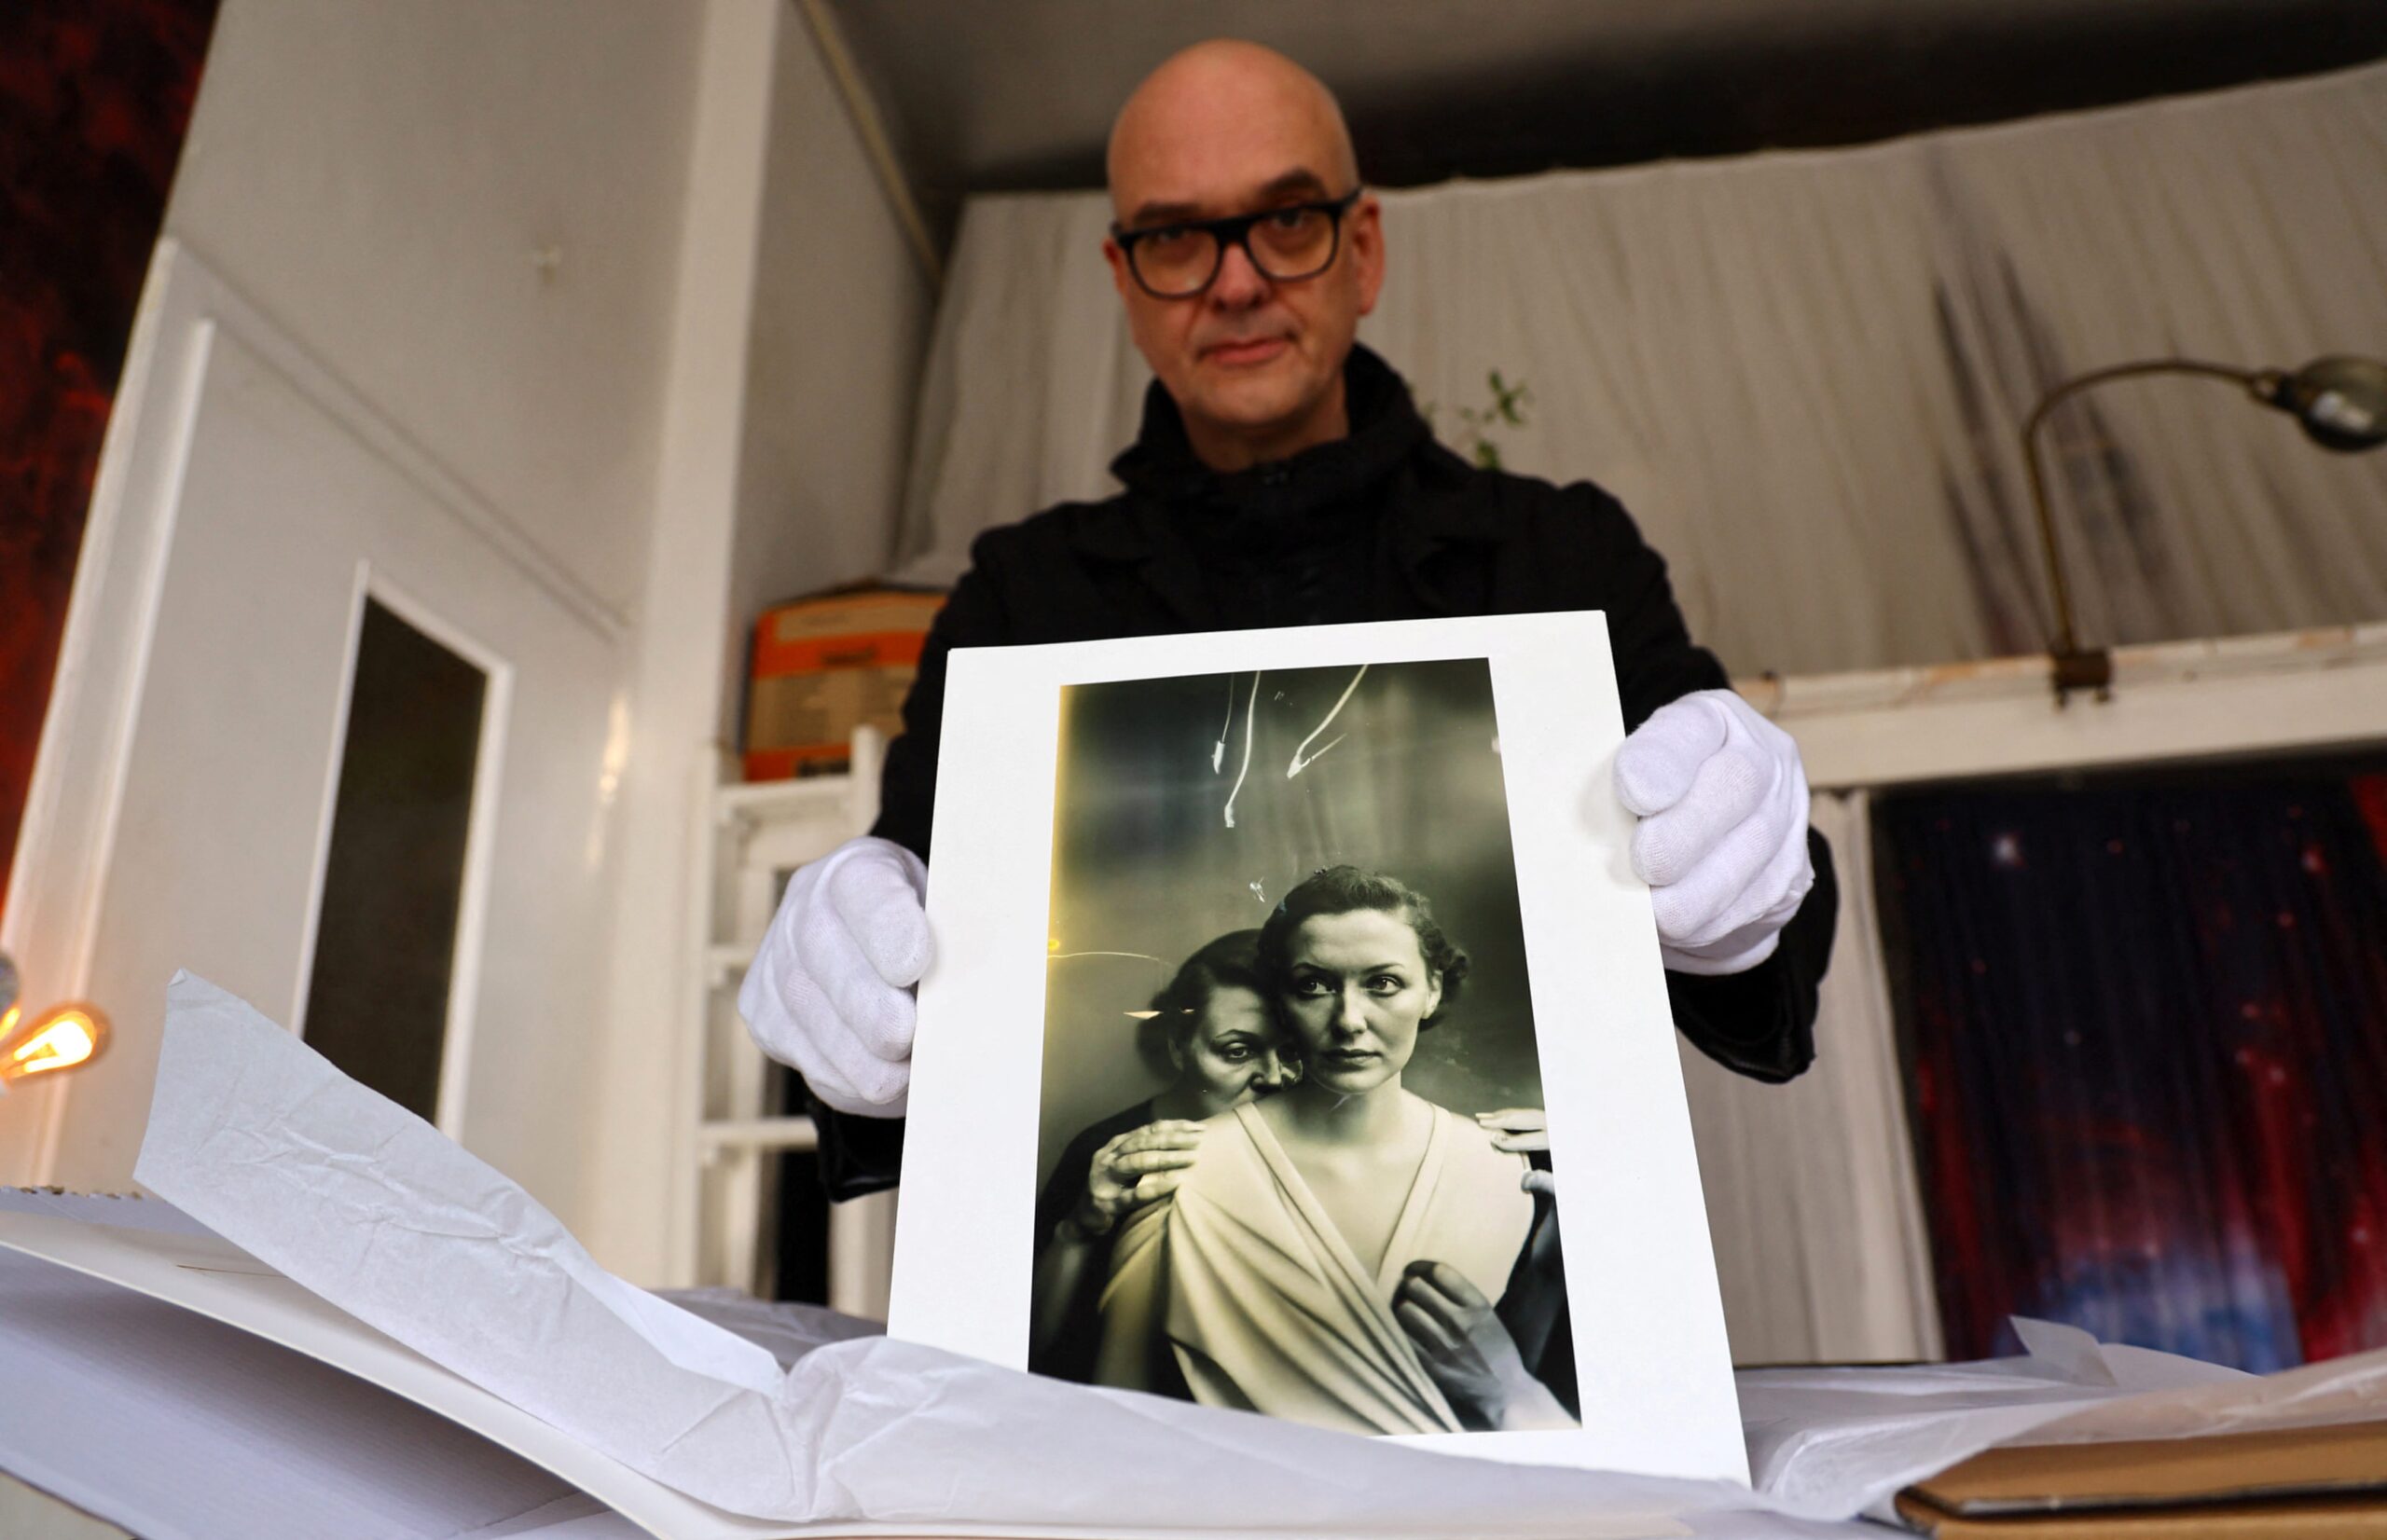 Boris Eldagsen toont een geprinte foto van zijn werk 'Pseudomnesia: The Electrician'.